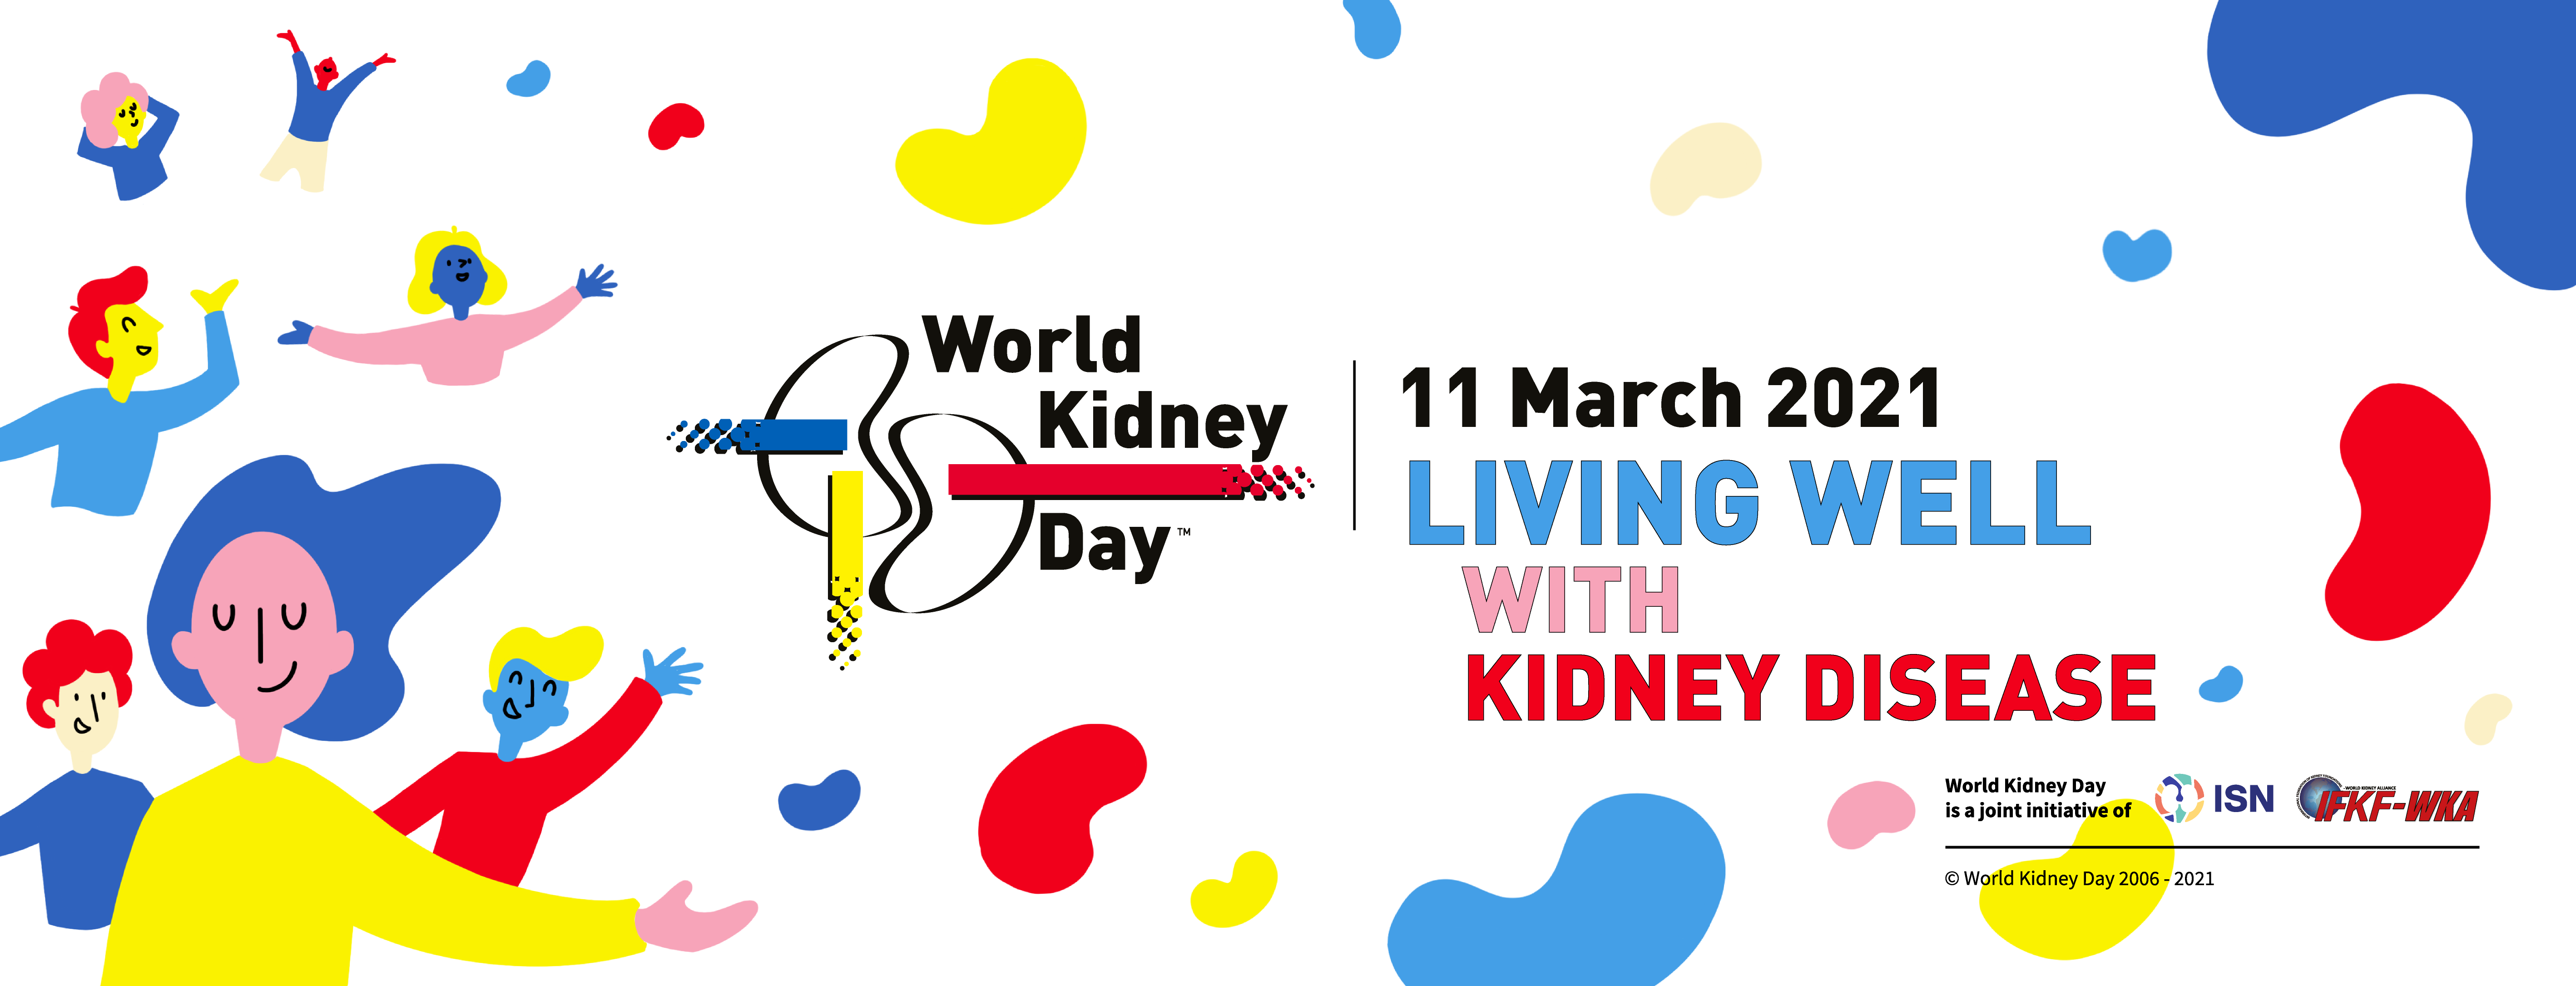 world kidney day presentation